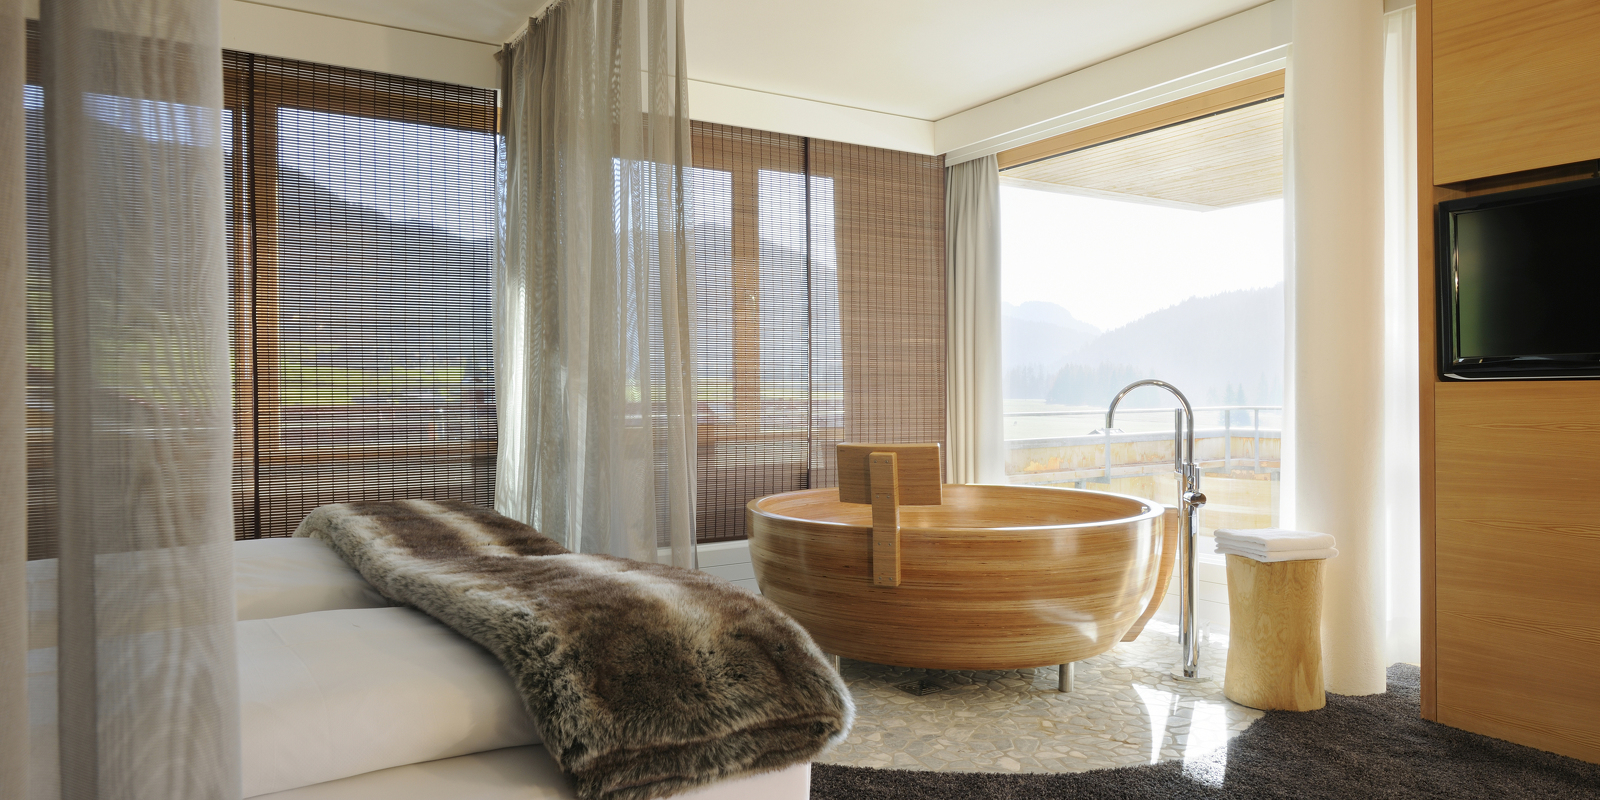 Besondere und großzügige Suite mit Schlaf- und Wohnraum und freistehender Holzbadewanne.